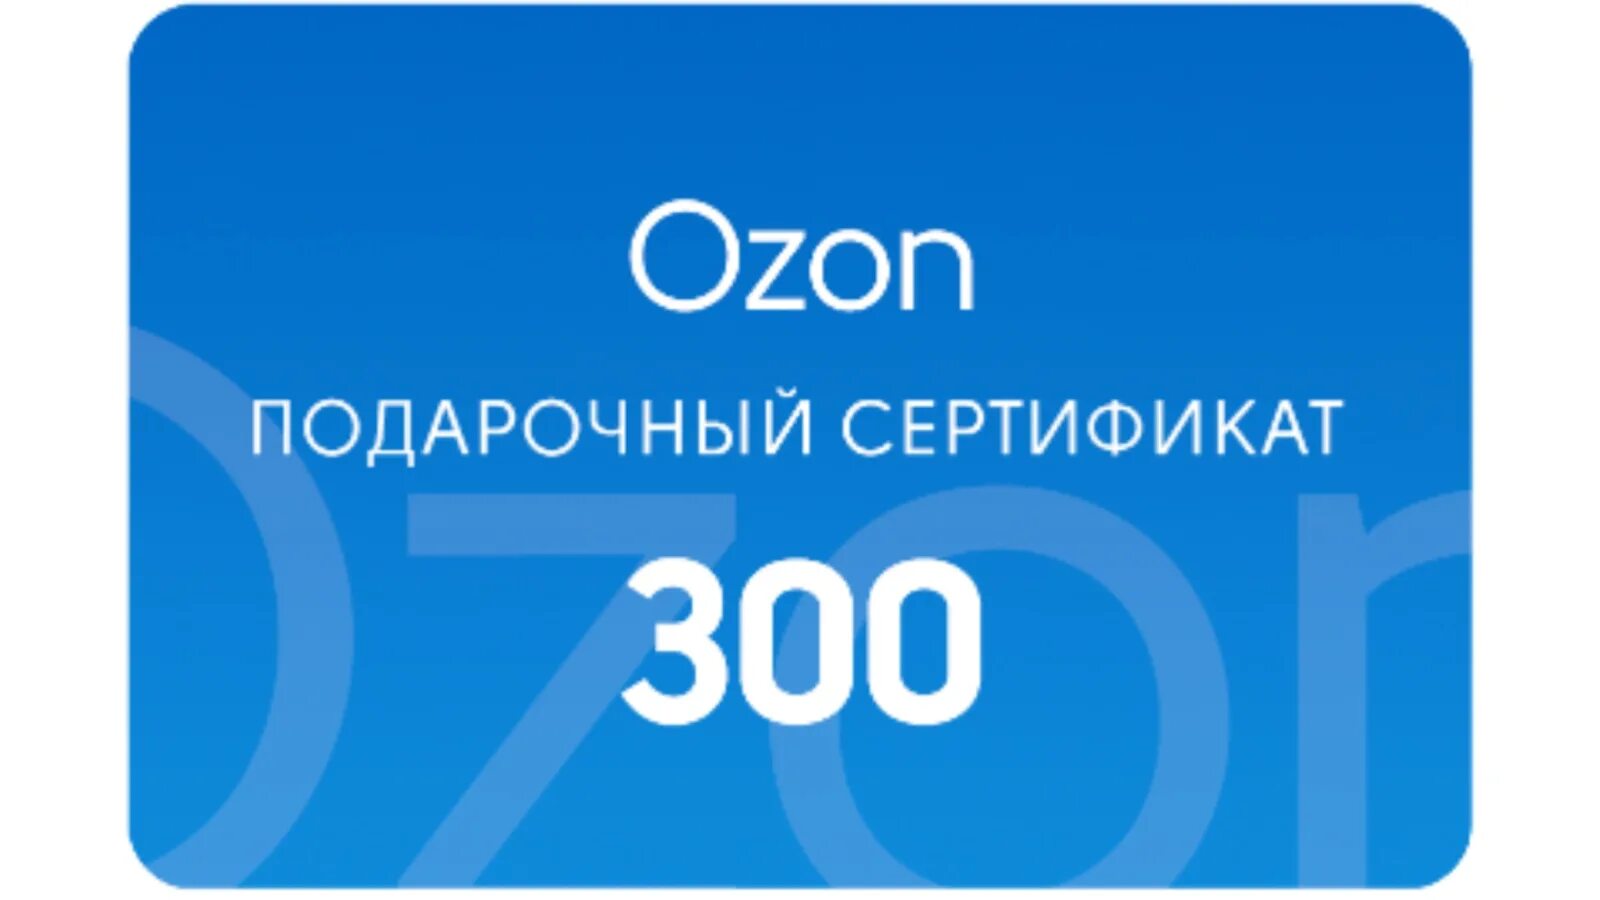 Озон 5000 рублей. Подарочный сертификат Озон. Подарочная карта. Сертификат OZON. Подарочная карта OZON.